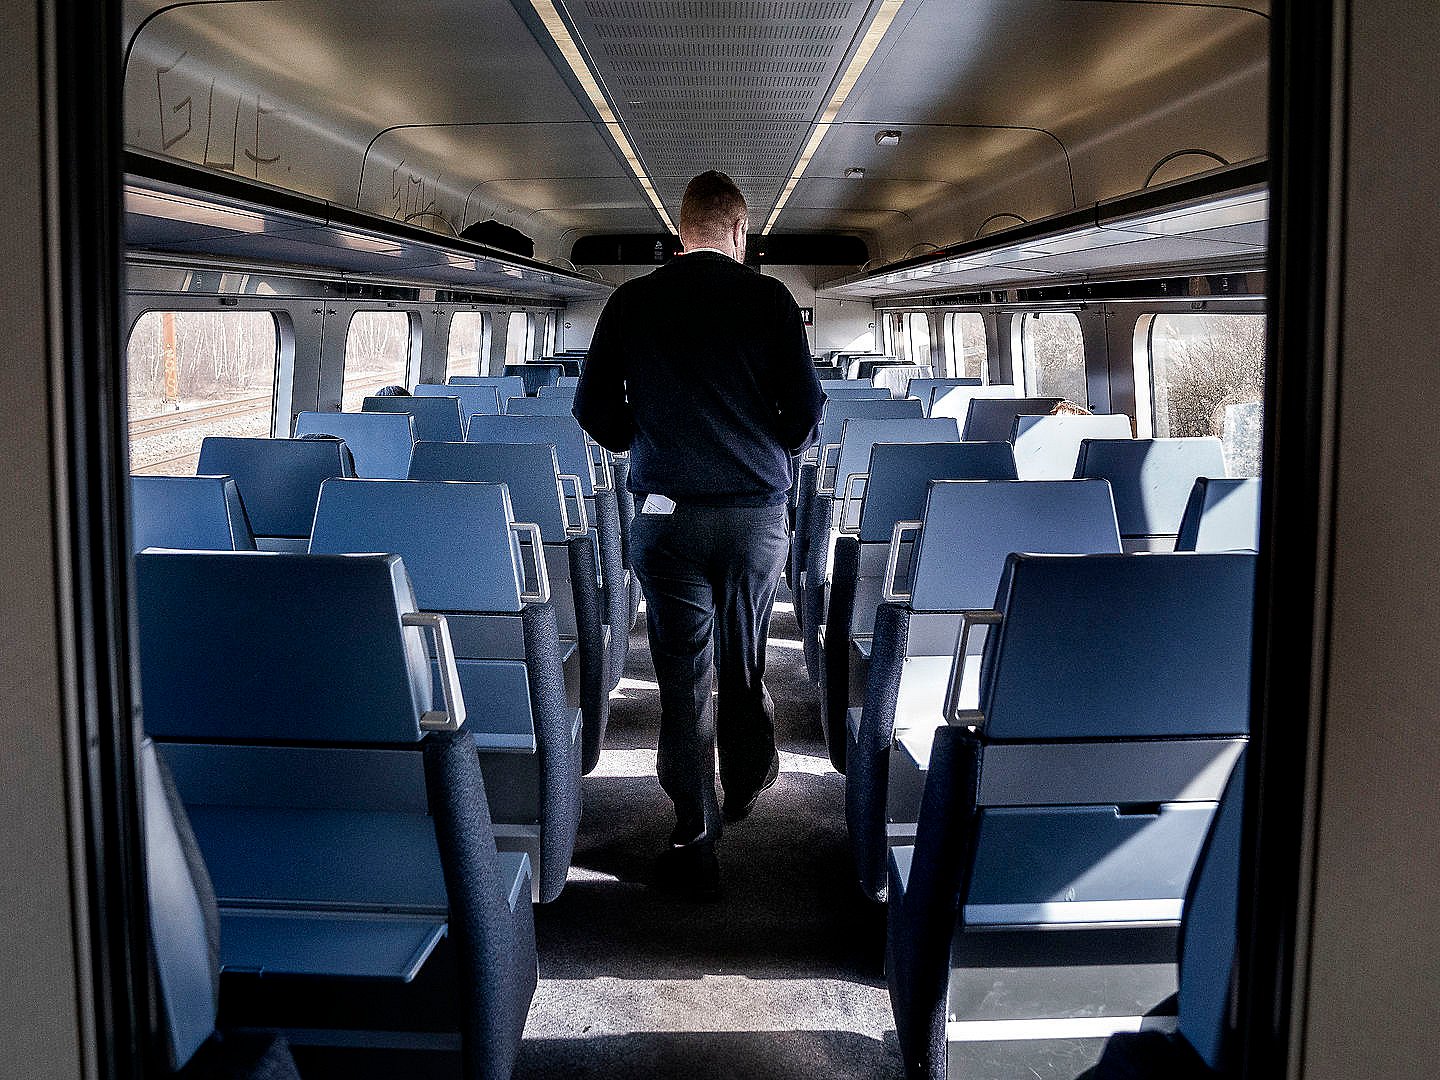 Rejsende kan plads trods halvtomme tog - bliver ikke brugt | TV 2 Kosmopol